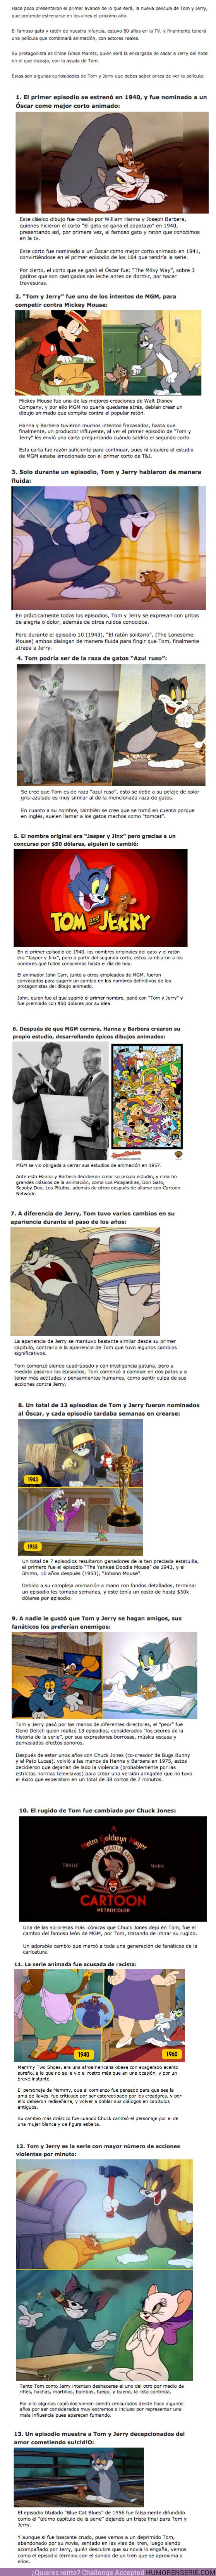 61686 - GALERÍA: 13 Curiosidades que debes saber antes de ver la película de “Tom & Jerry”